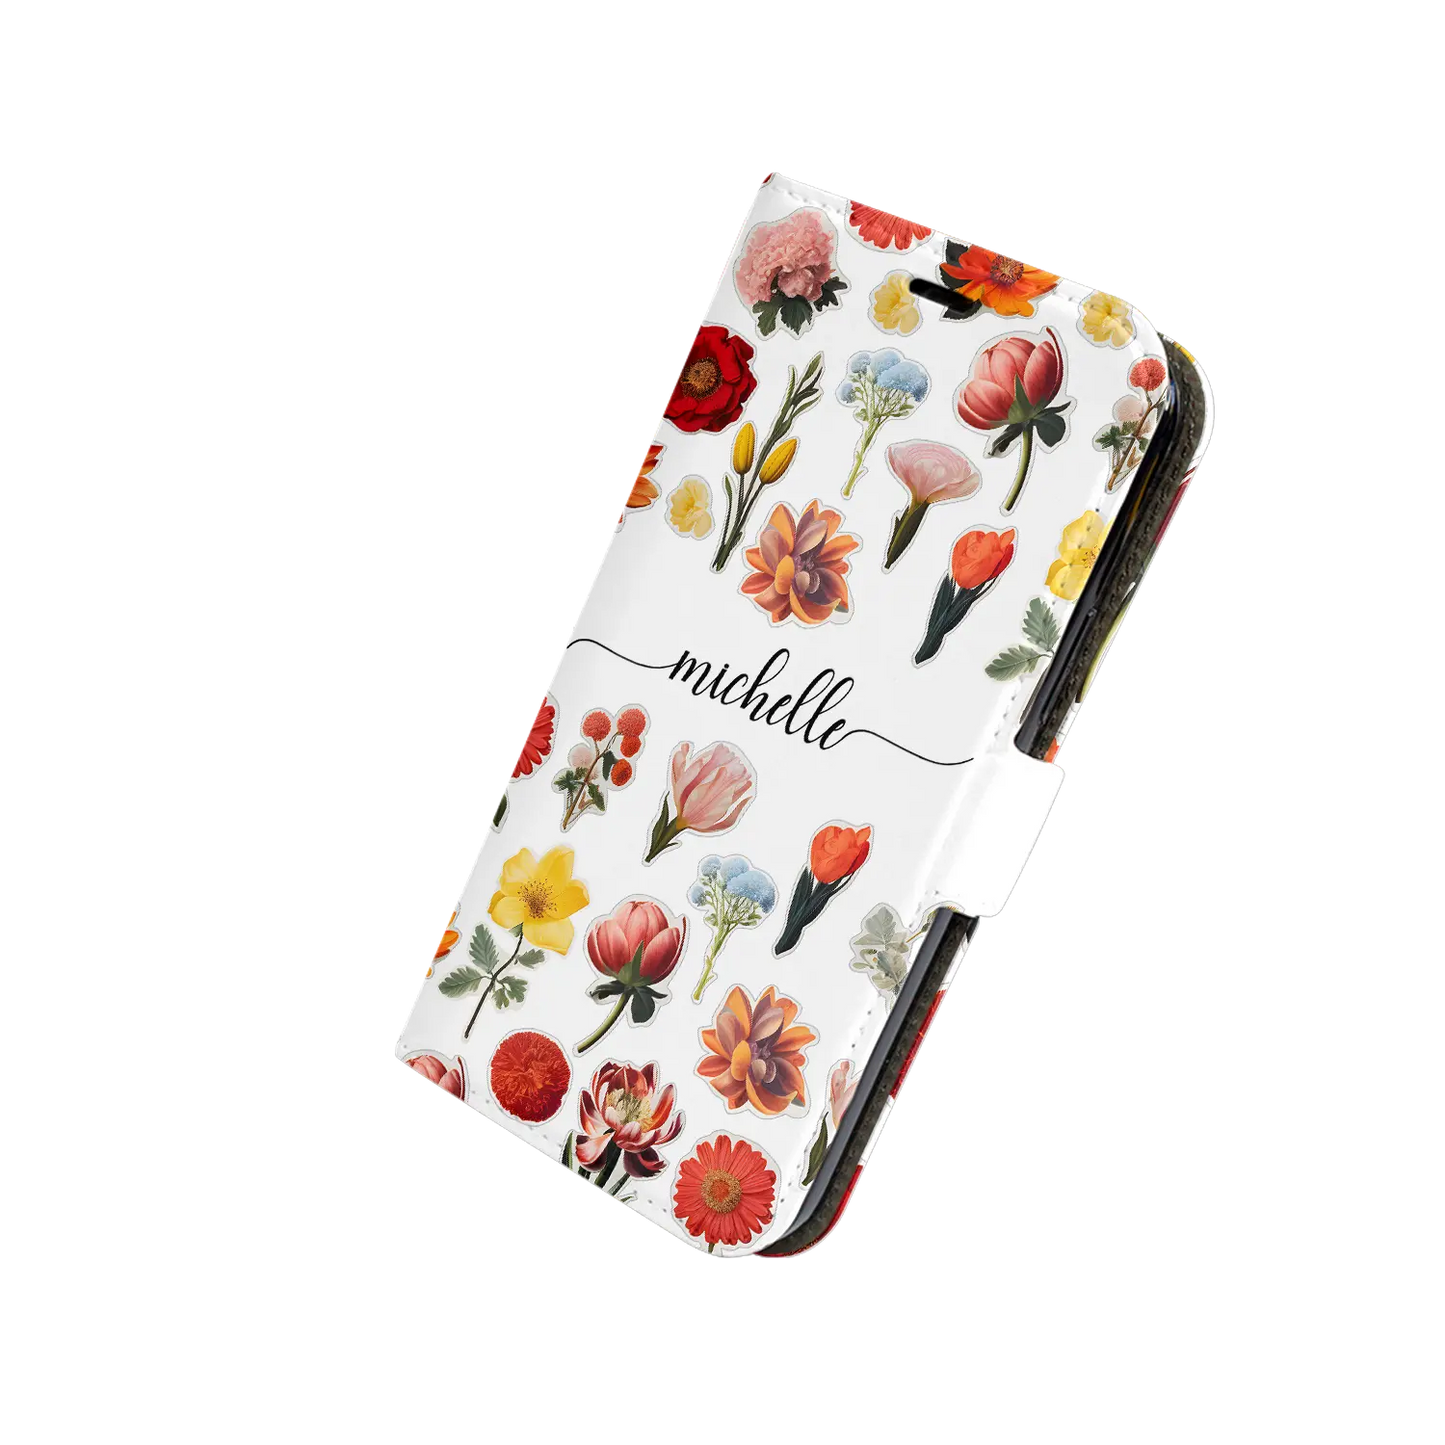 Autocollants pour fleurs - Galaxy S coque